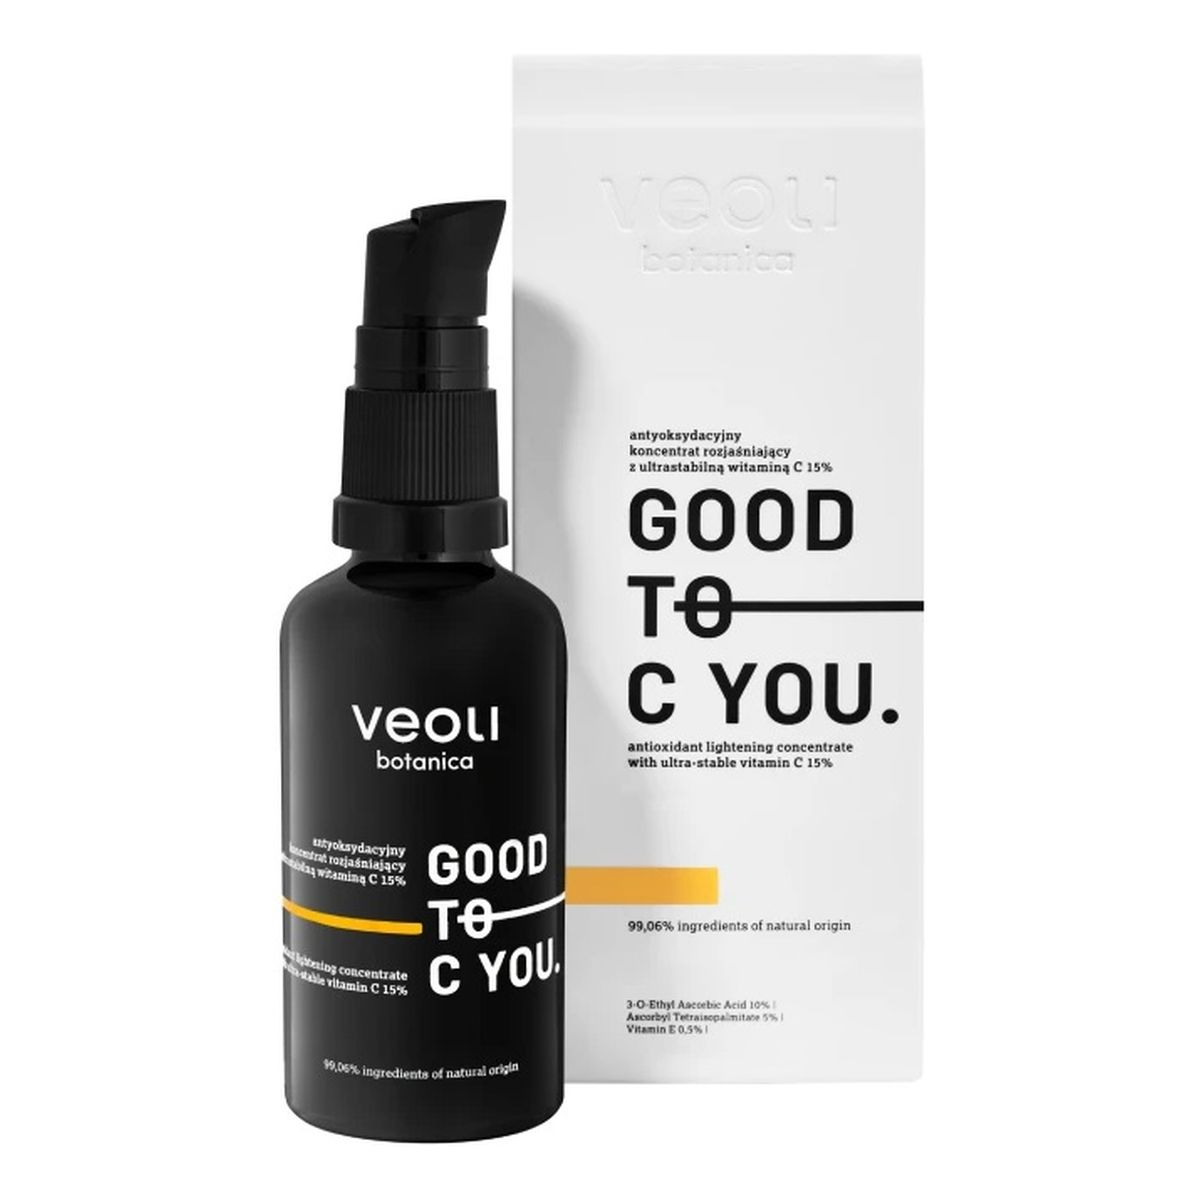 Veoli Botanica Good to c you antyoksydacyjny koncentrat rozjaśniający z ultrastabilną witaminą c 15% 40ml